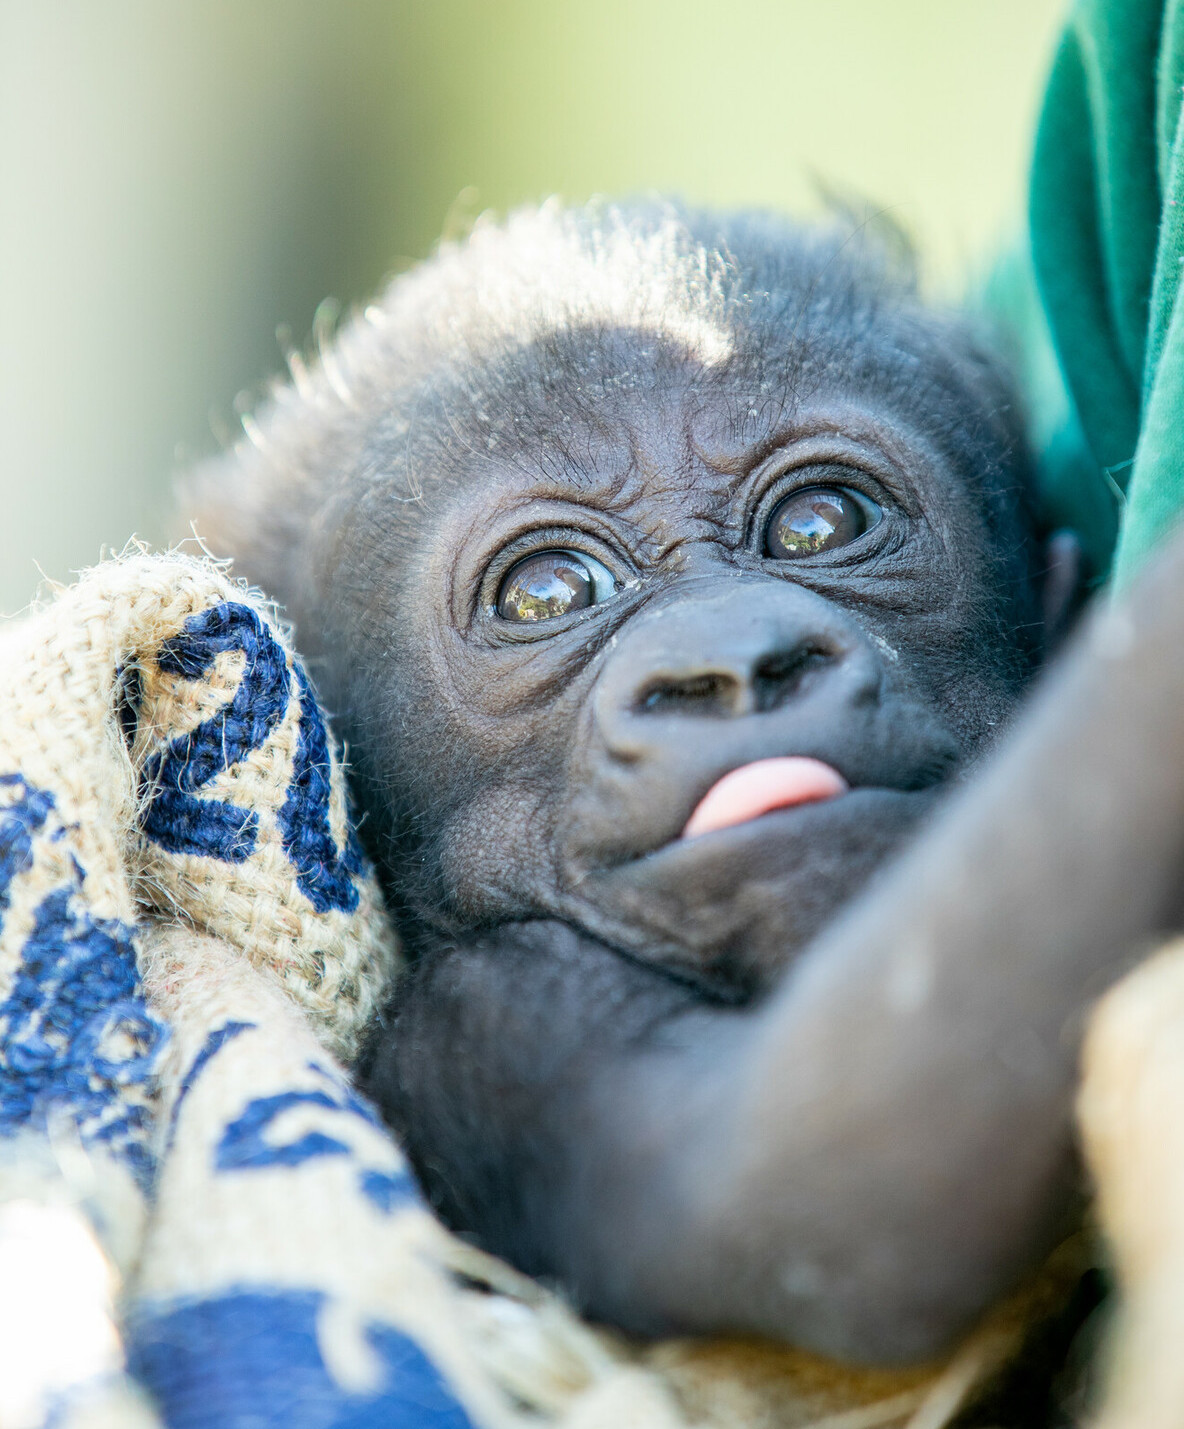 zuna the baby gorilla